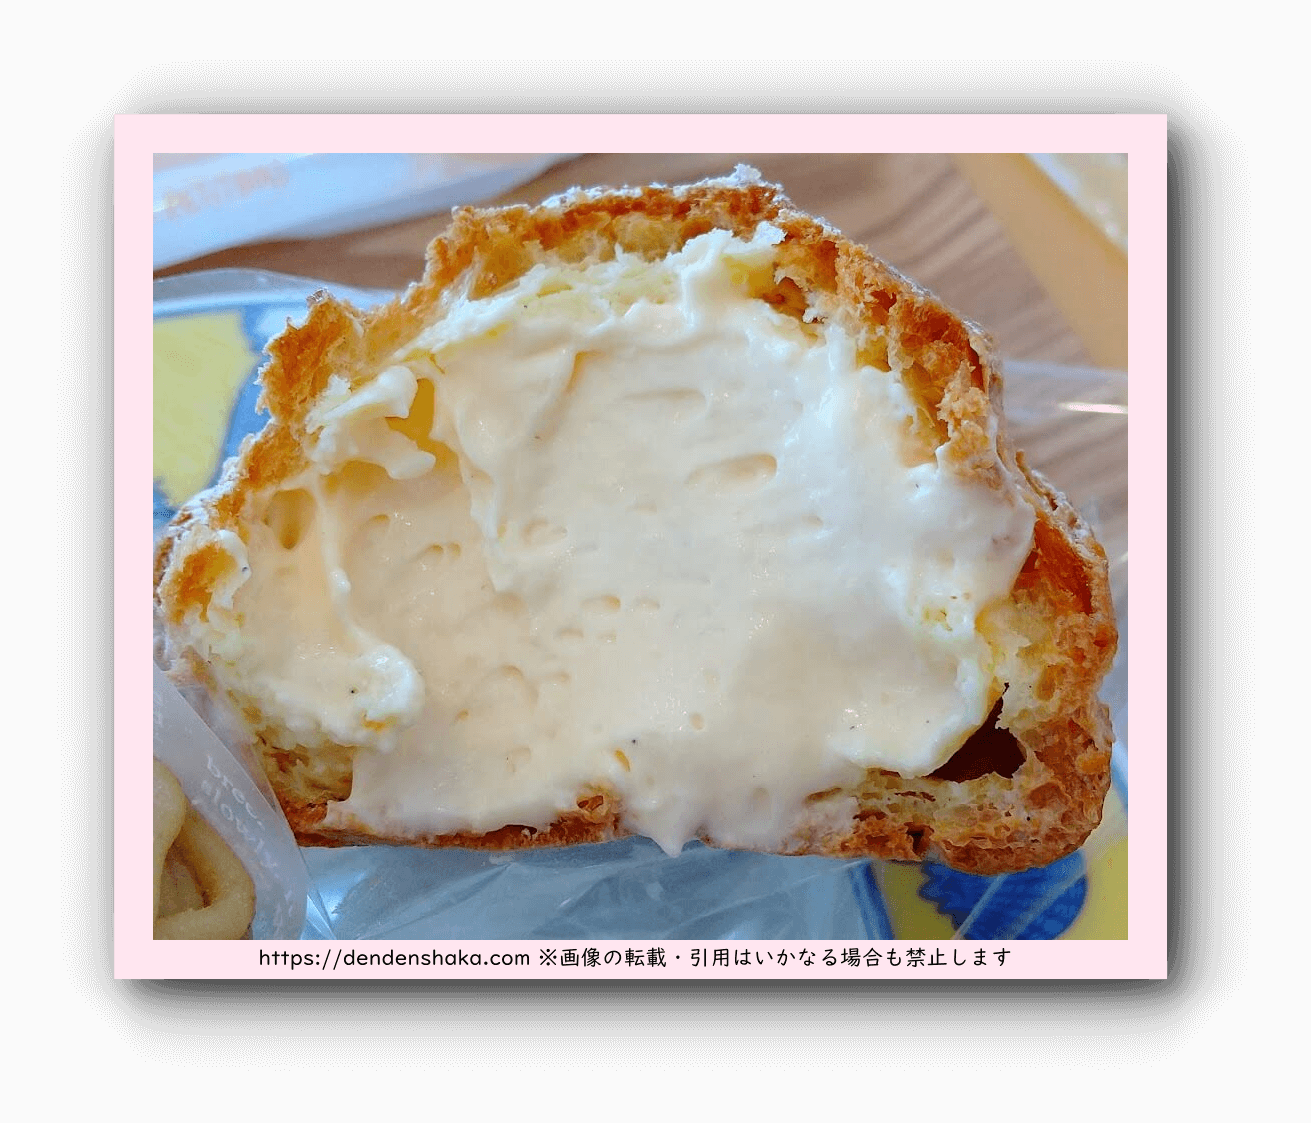 文明堂壹番館で食べたシュークリームの断面を撮影してクリームが中にぎっしり詰まっていることを説明した画像